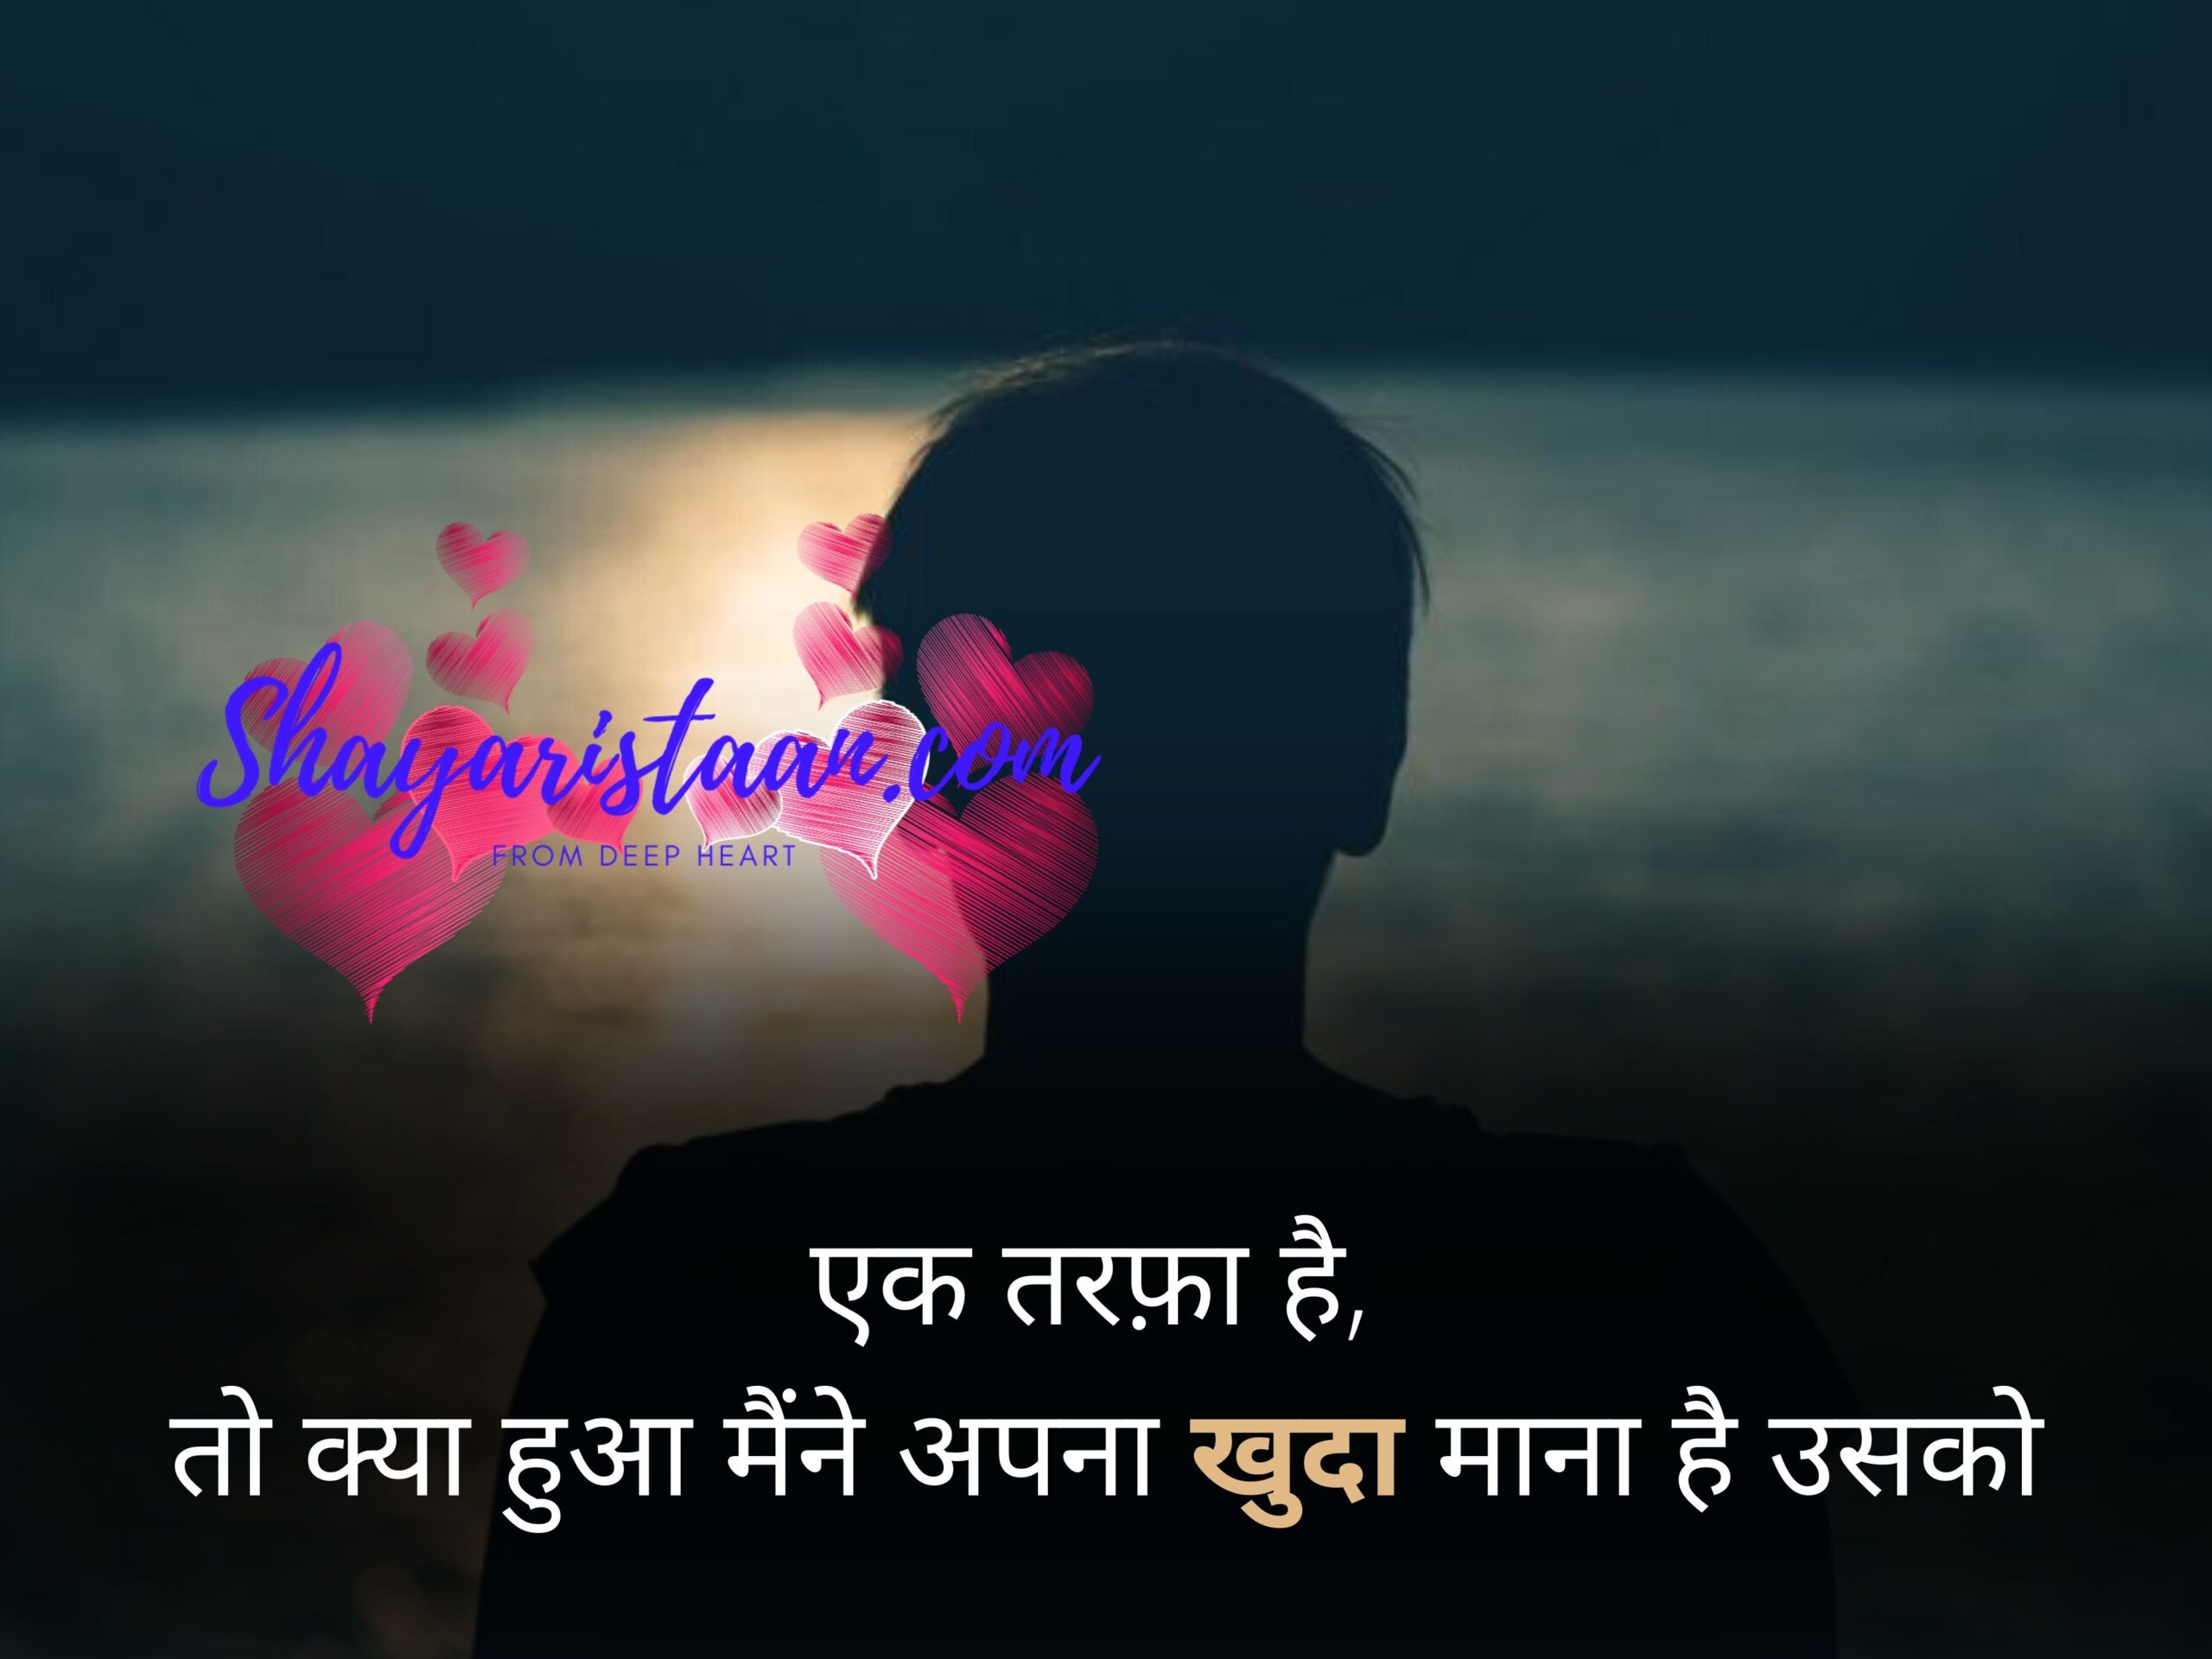 one sided love quotes in hindi  | एक तरफ़ा है,   तो क्या हुआ मैंने अपना खुदा माना है उसको |